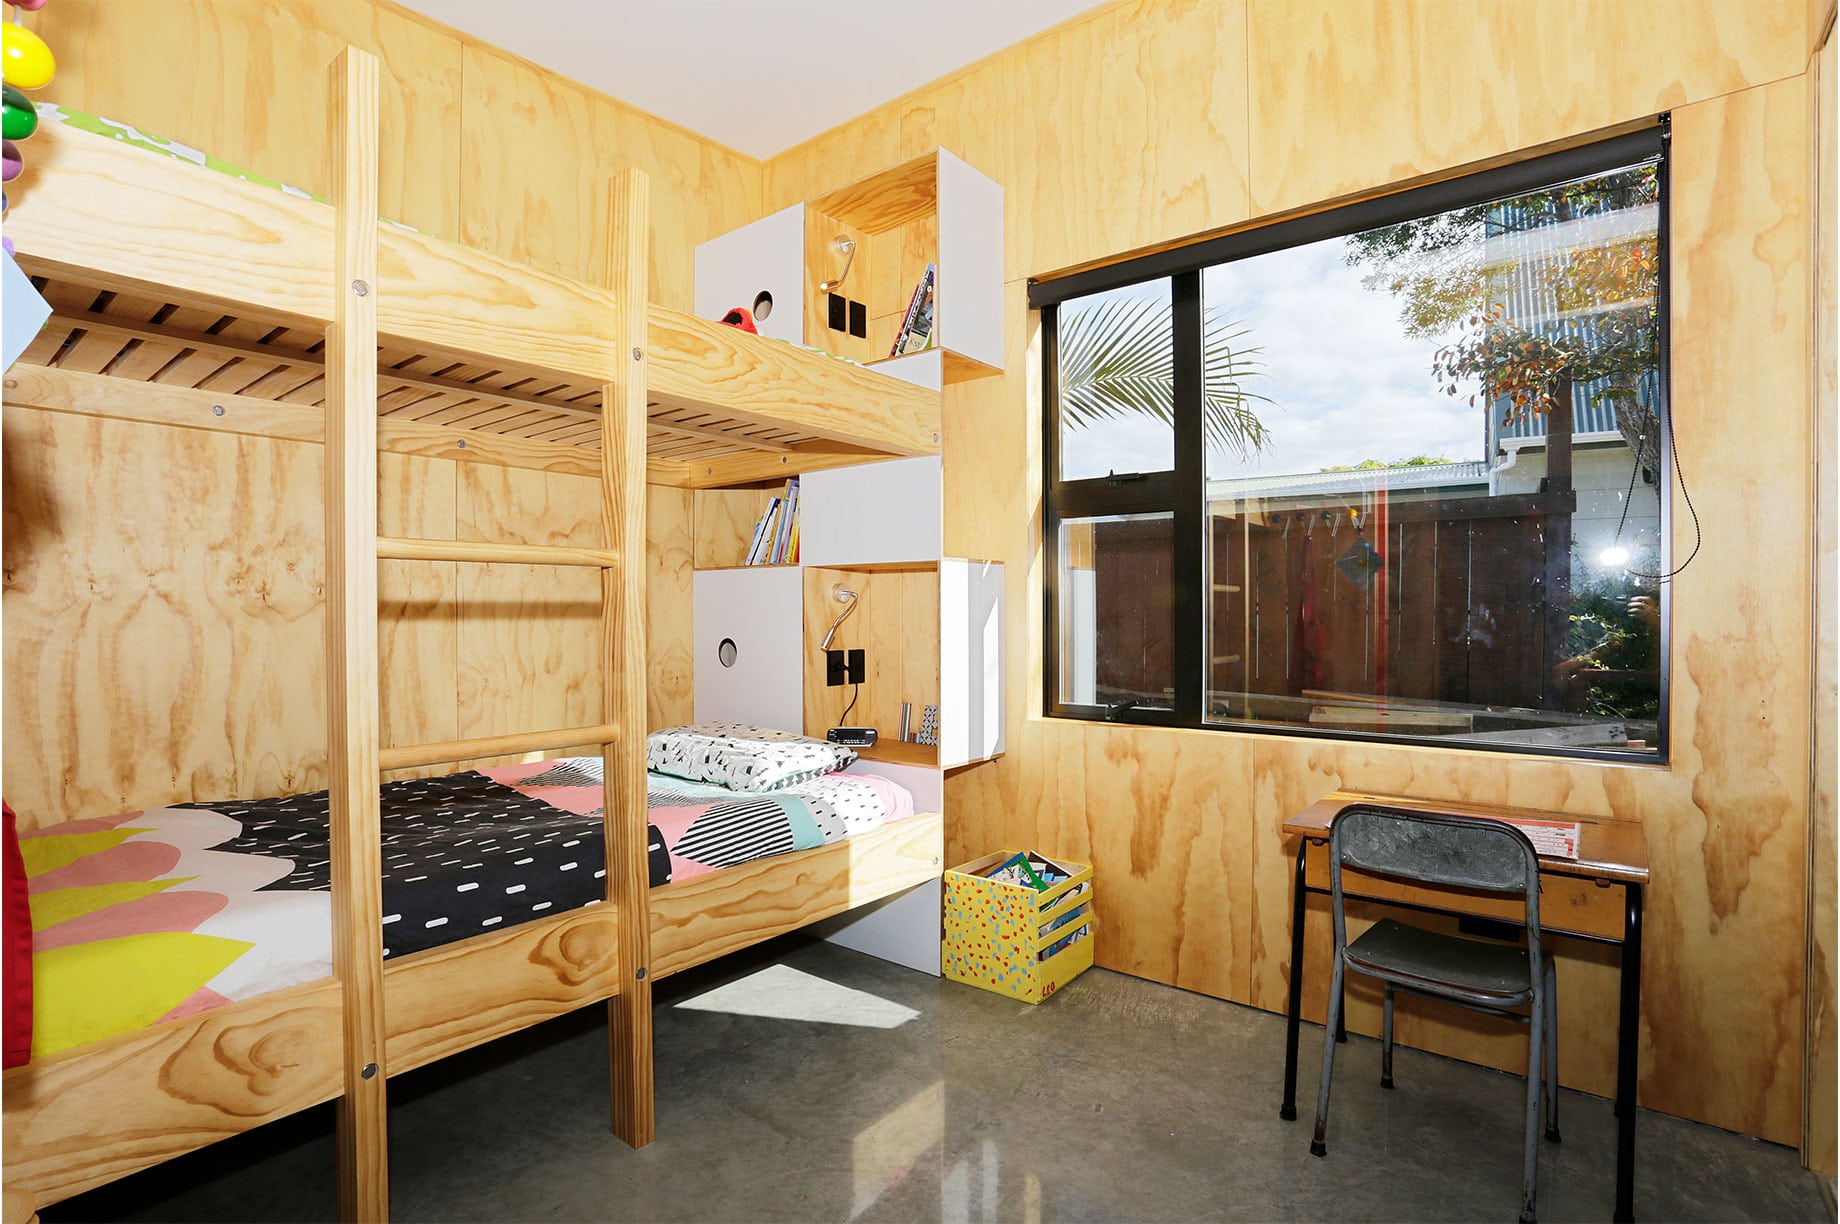 Wooden kids bedroom